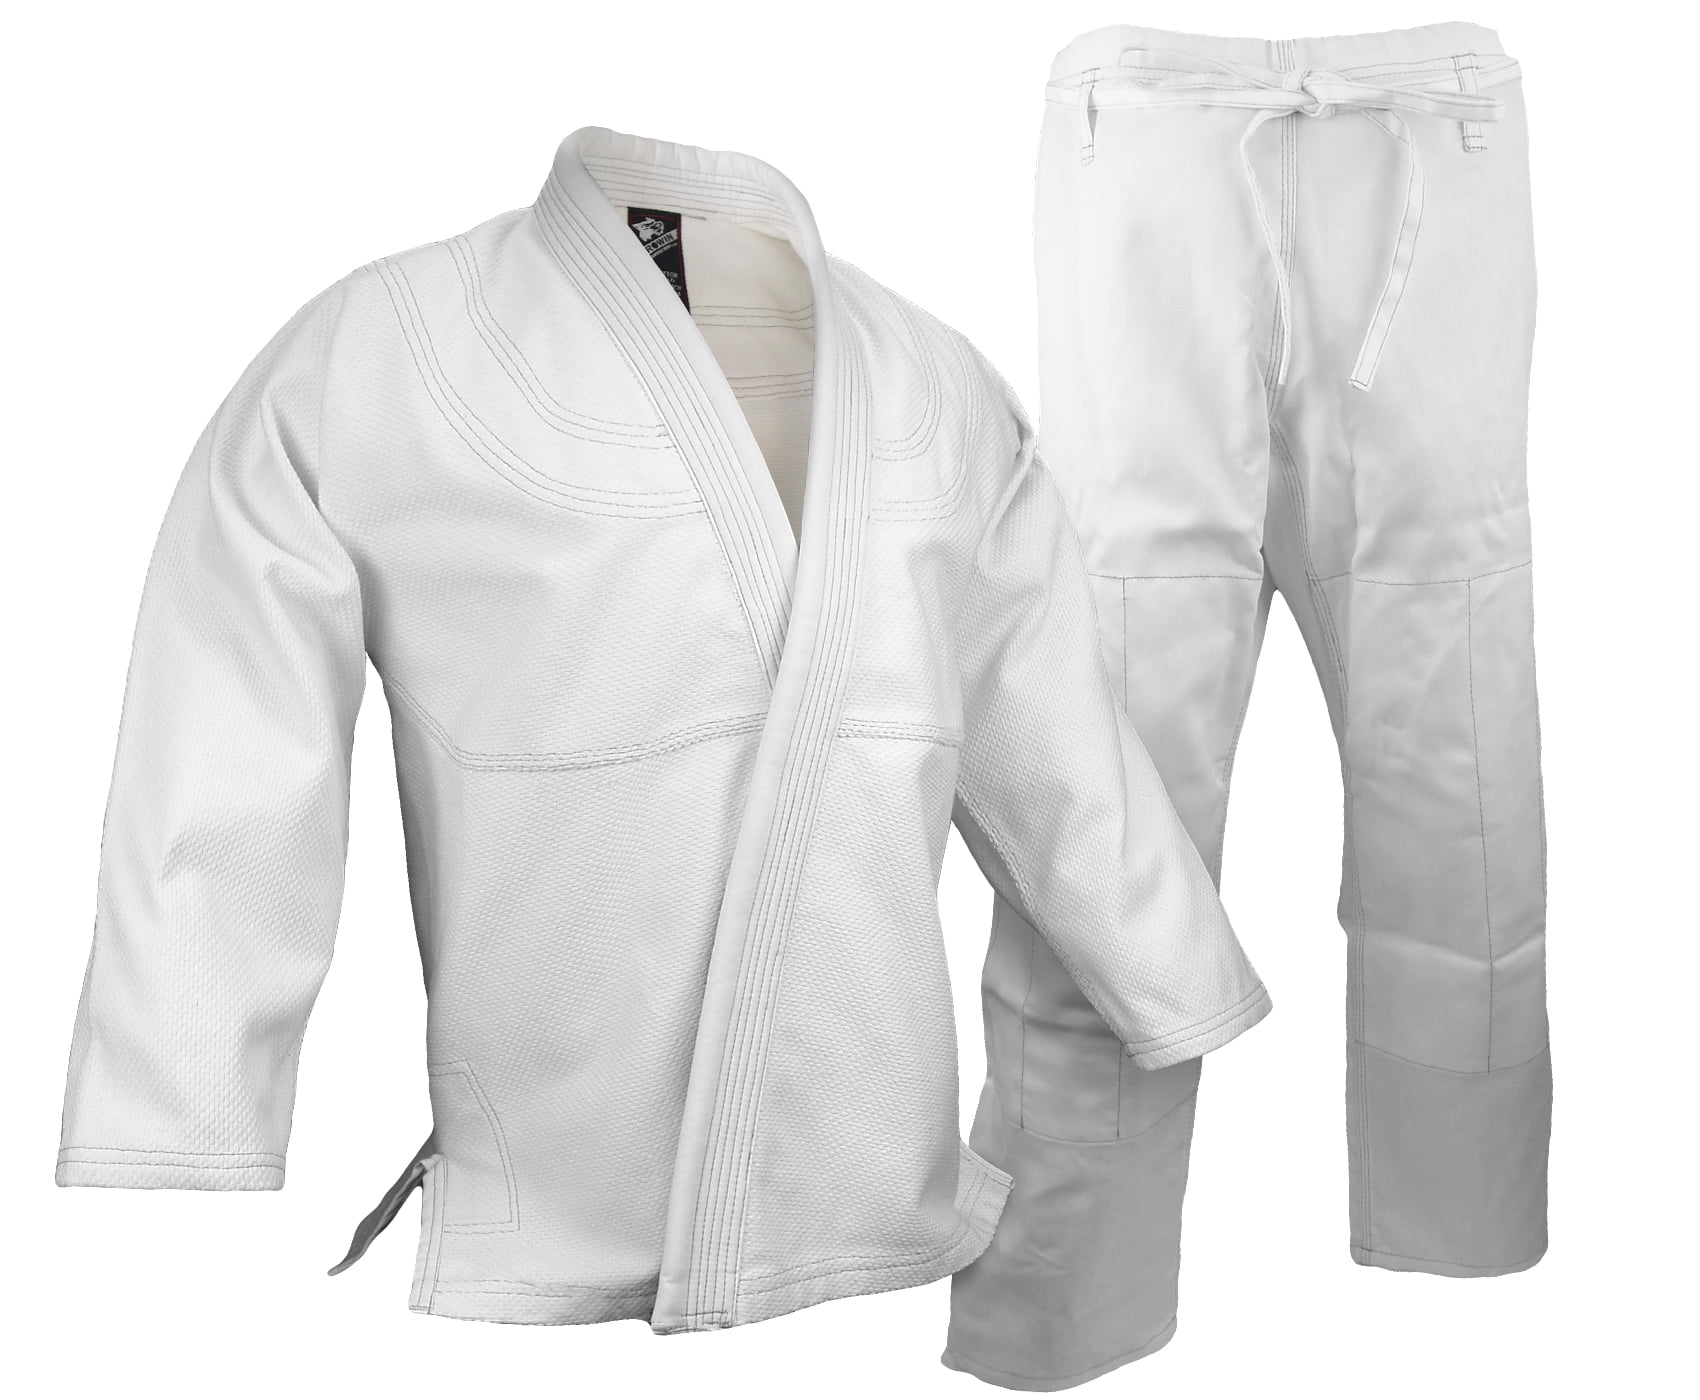 New Judo Gi JUDO Uniform White Single Weave 100% Cotton BJJ Jiu Jiutsu JUDO Gi 